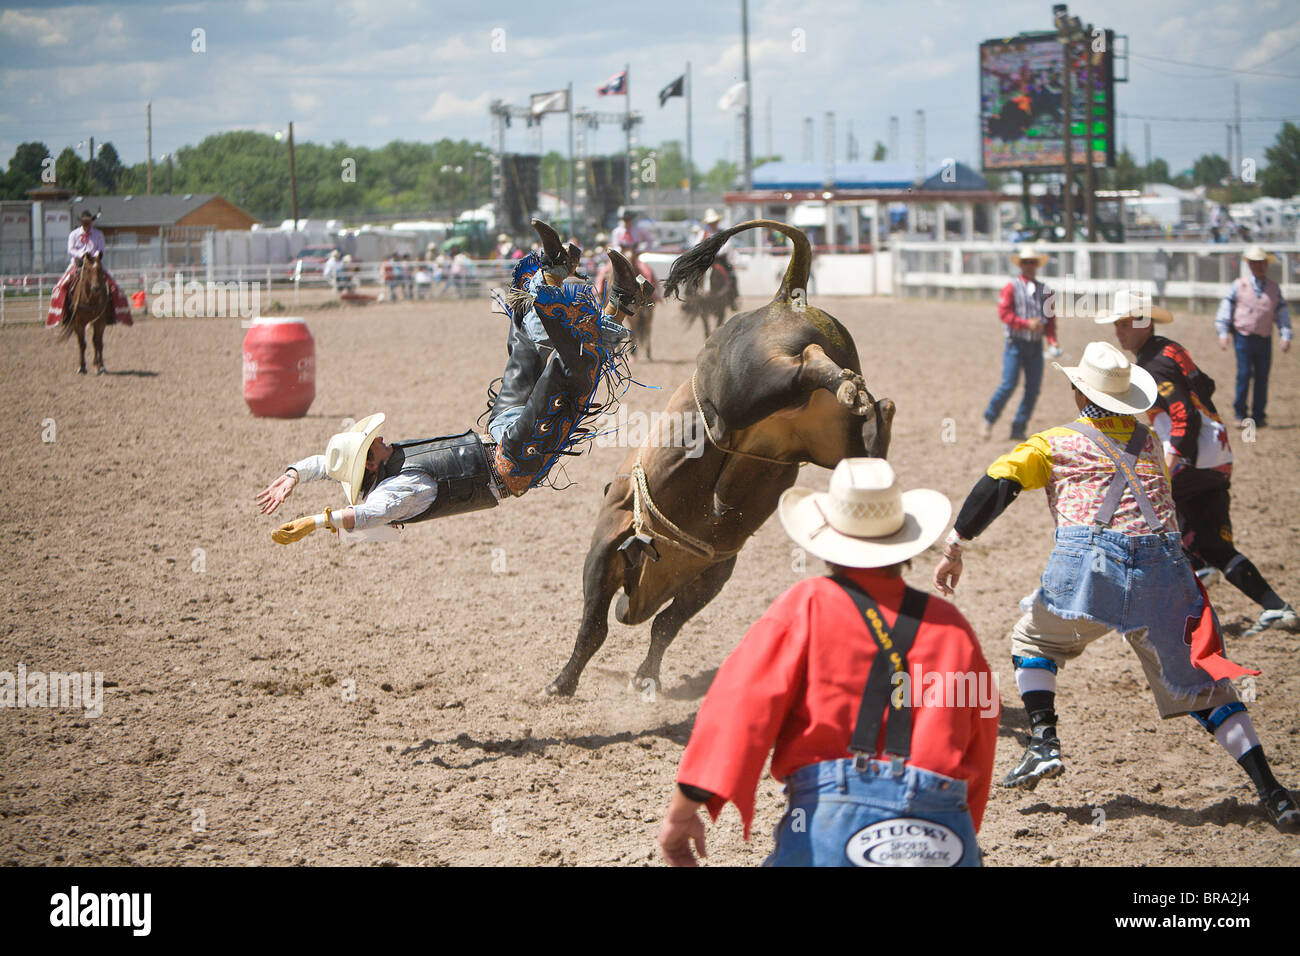 Rodeo Reiter Cole Echols, der Bulle geworfen war er in der 2009 Cheyenne Wyoming Frontier Tage Rodeo Reiten. Stockfoto